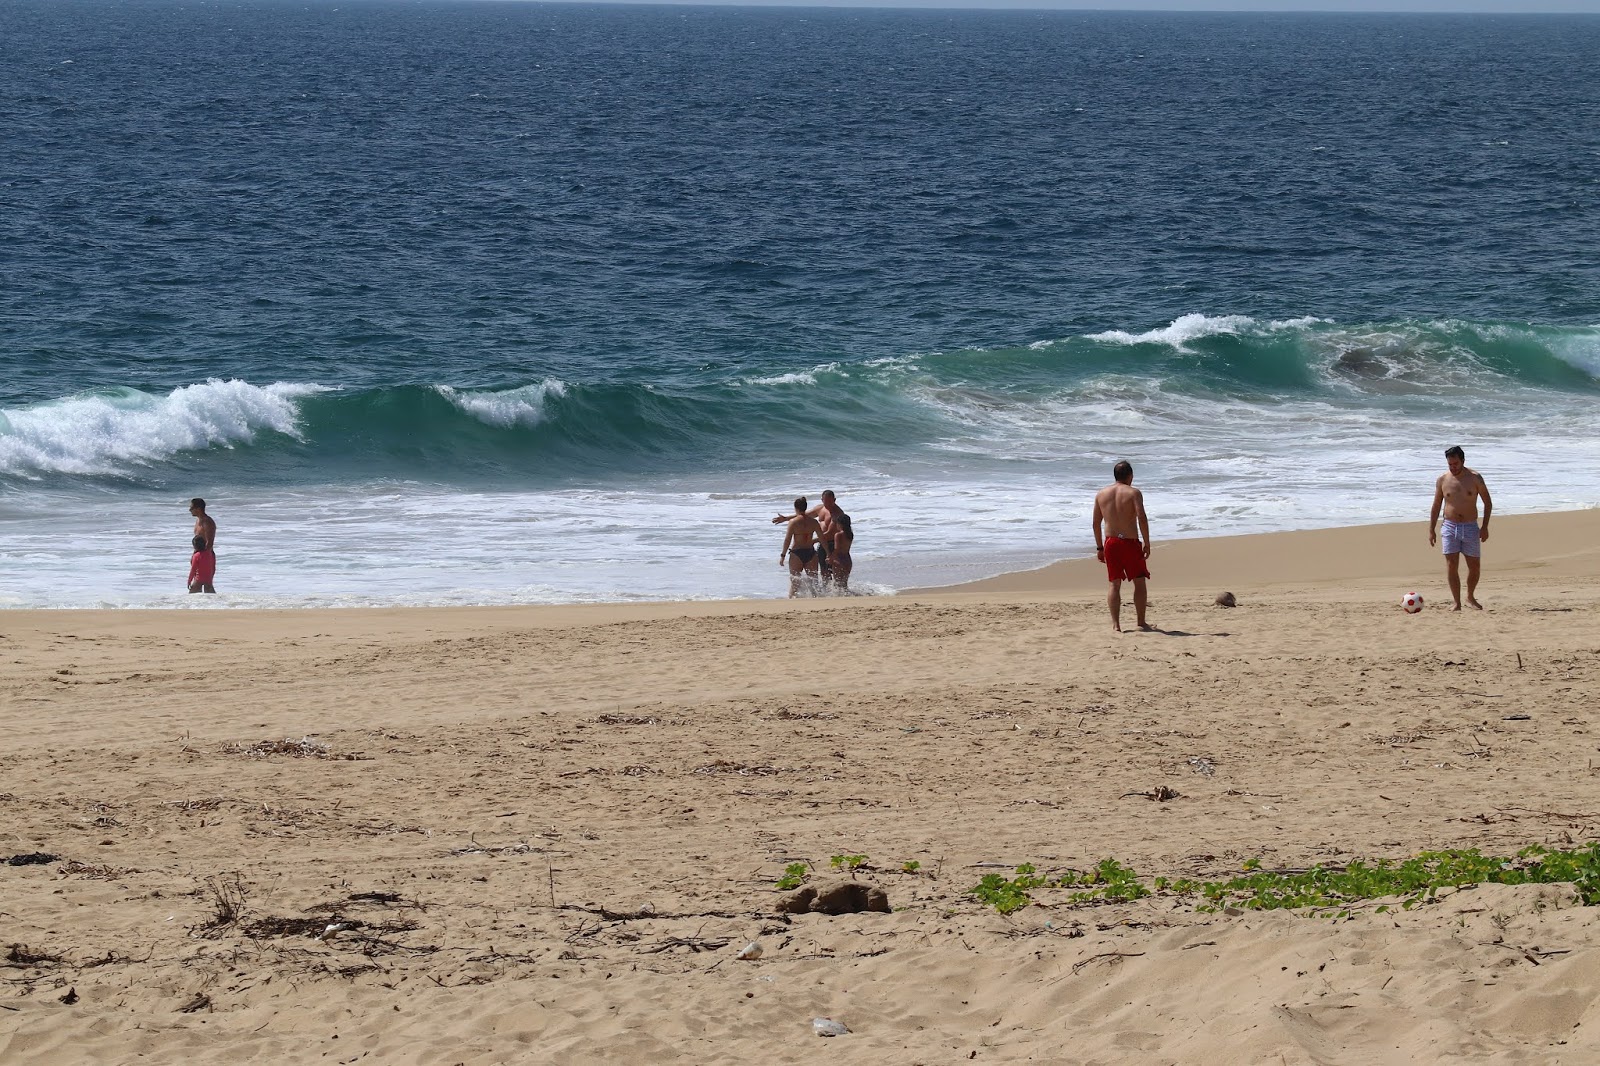 Playa Los Panchitos'in fotoğrafı parlak kum yüzey ile